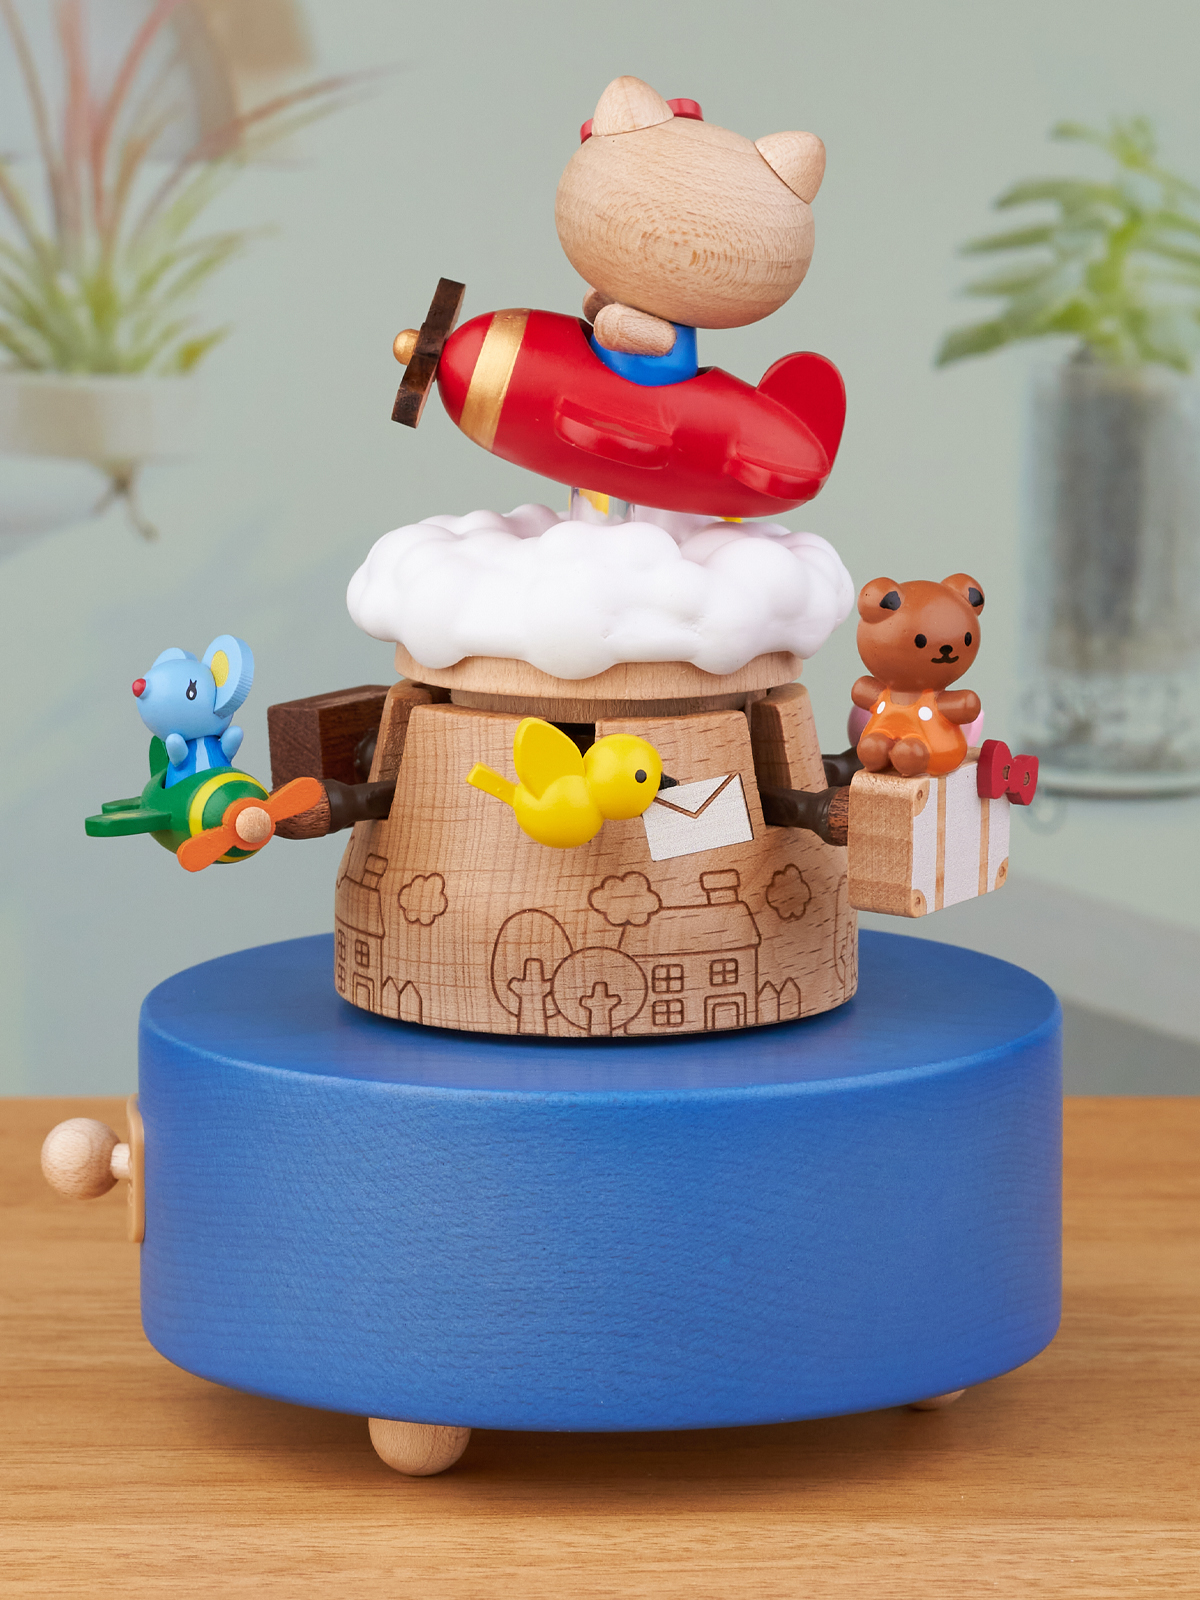 森活木趣音樂盒經典Hello Kitty木質材質適合作為生日或聖誕節禮物 (8.3折)